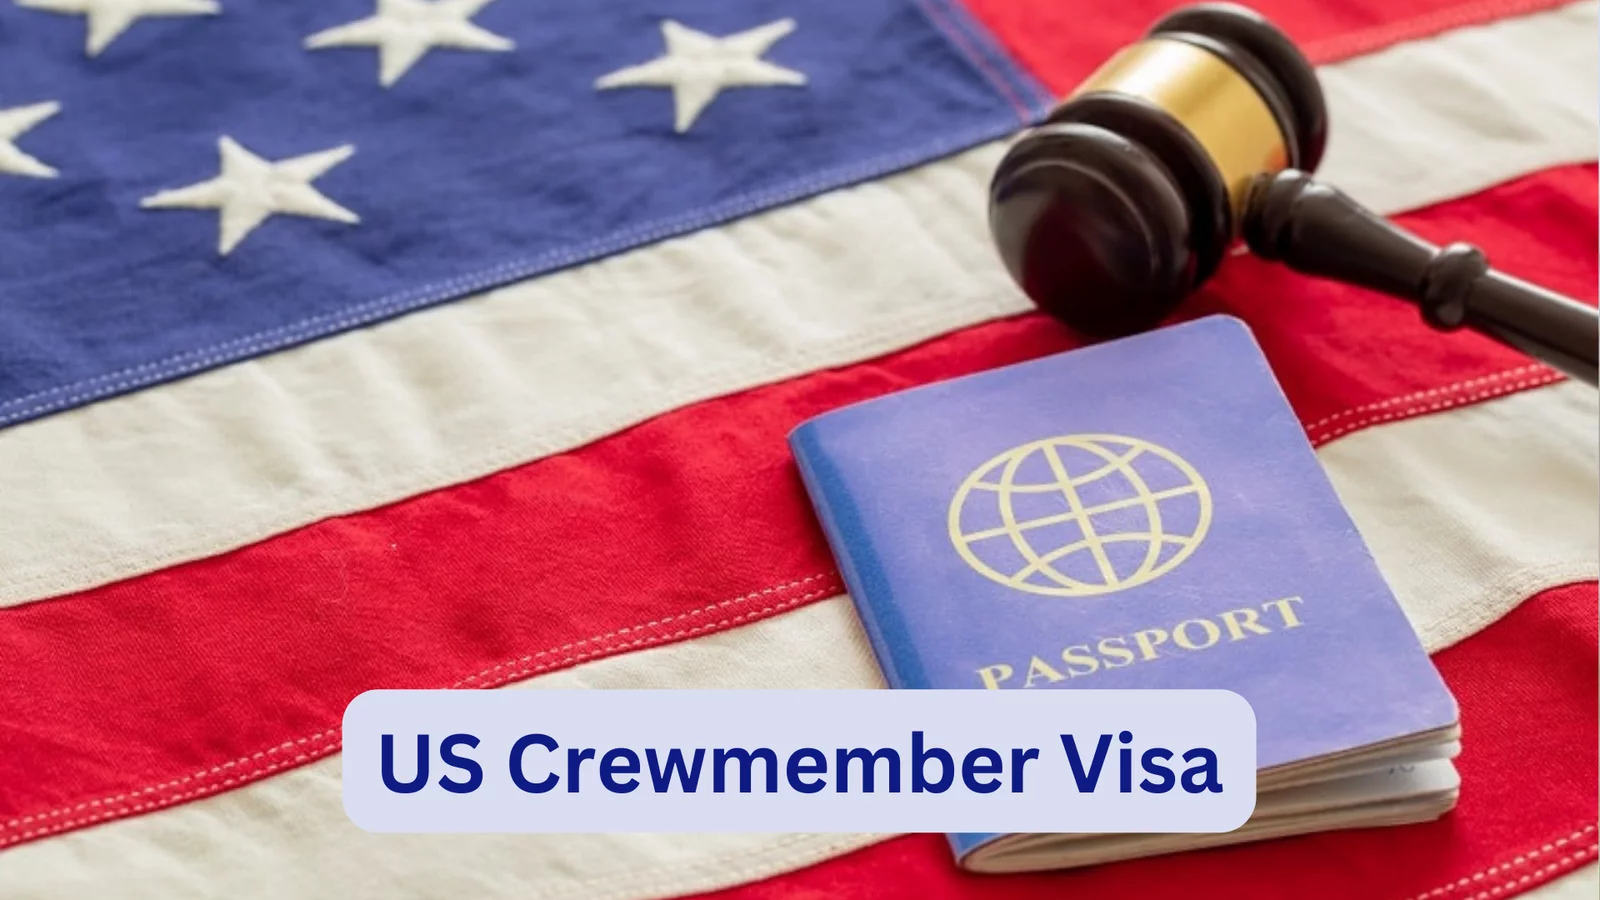 US Crewmember Visa